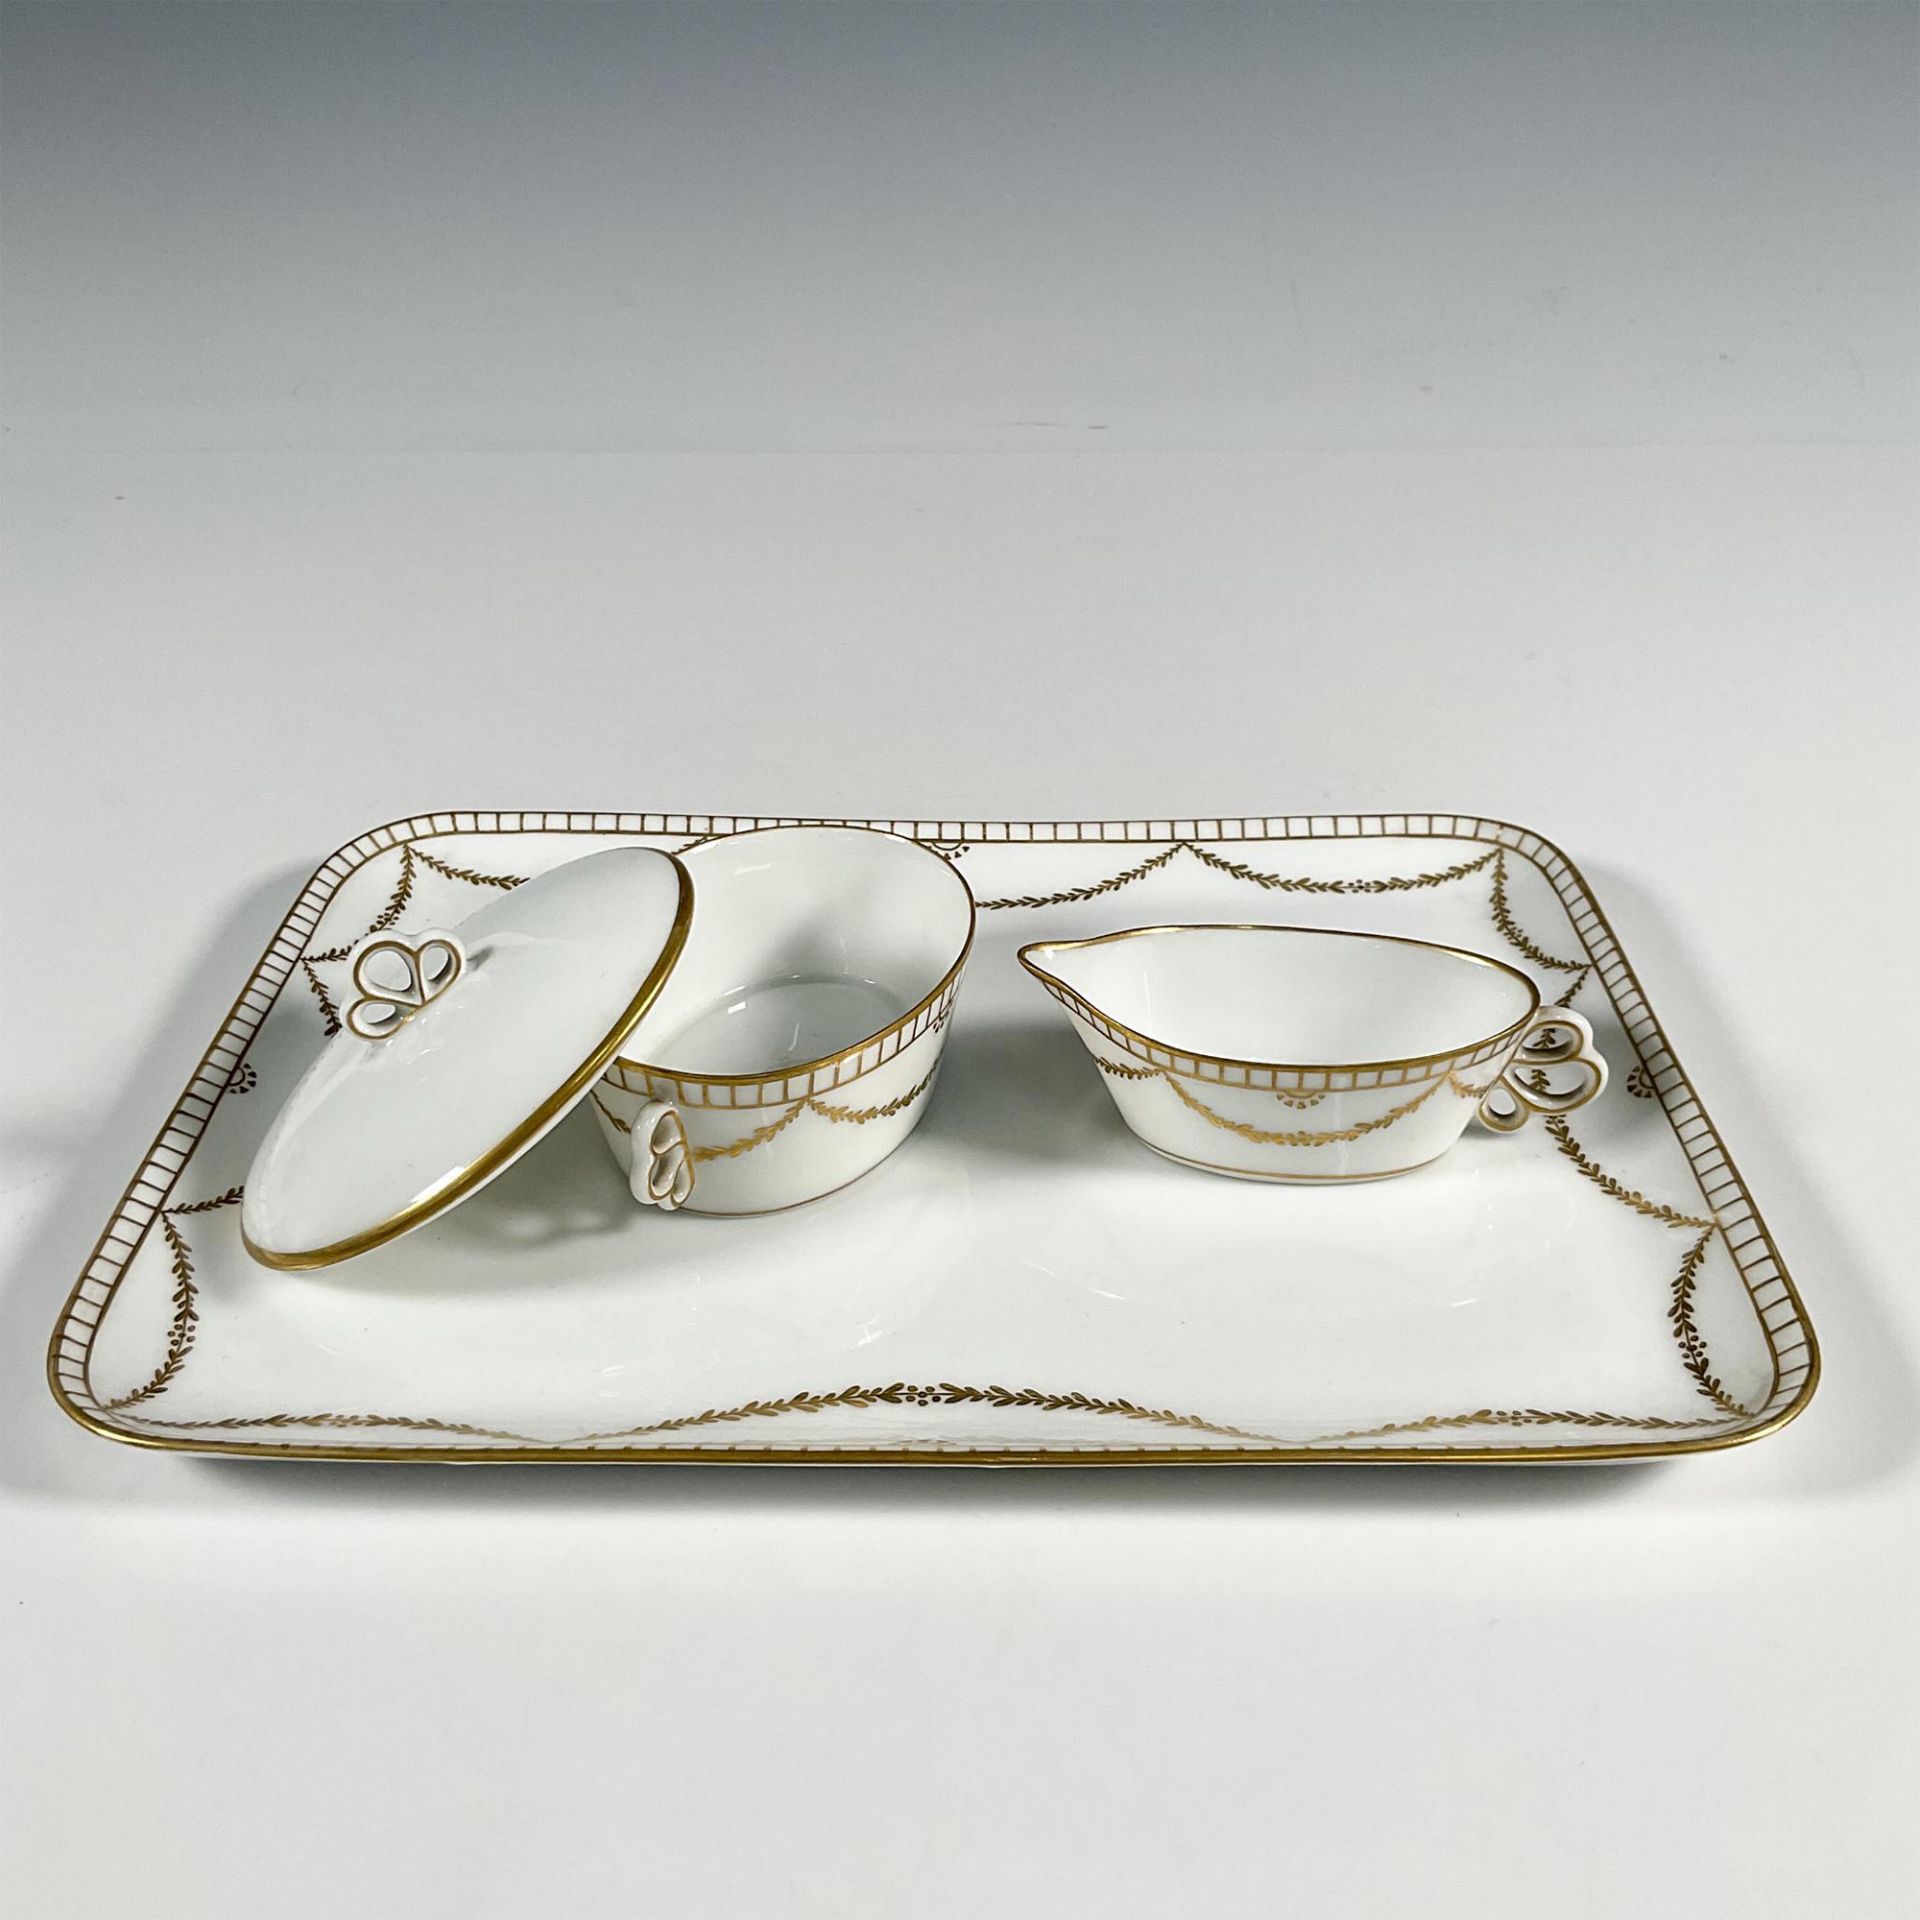 3pc Royal Copenhagen Porcelain Dessert Tray w/Serving Pieces - Image 2 of 3